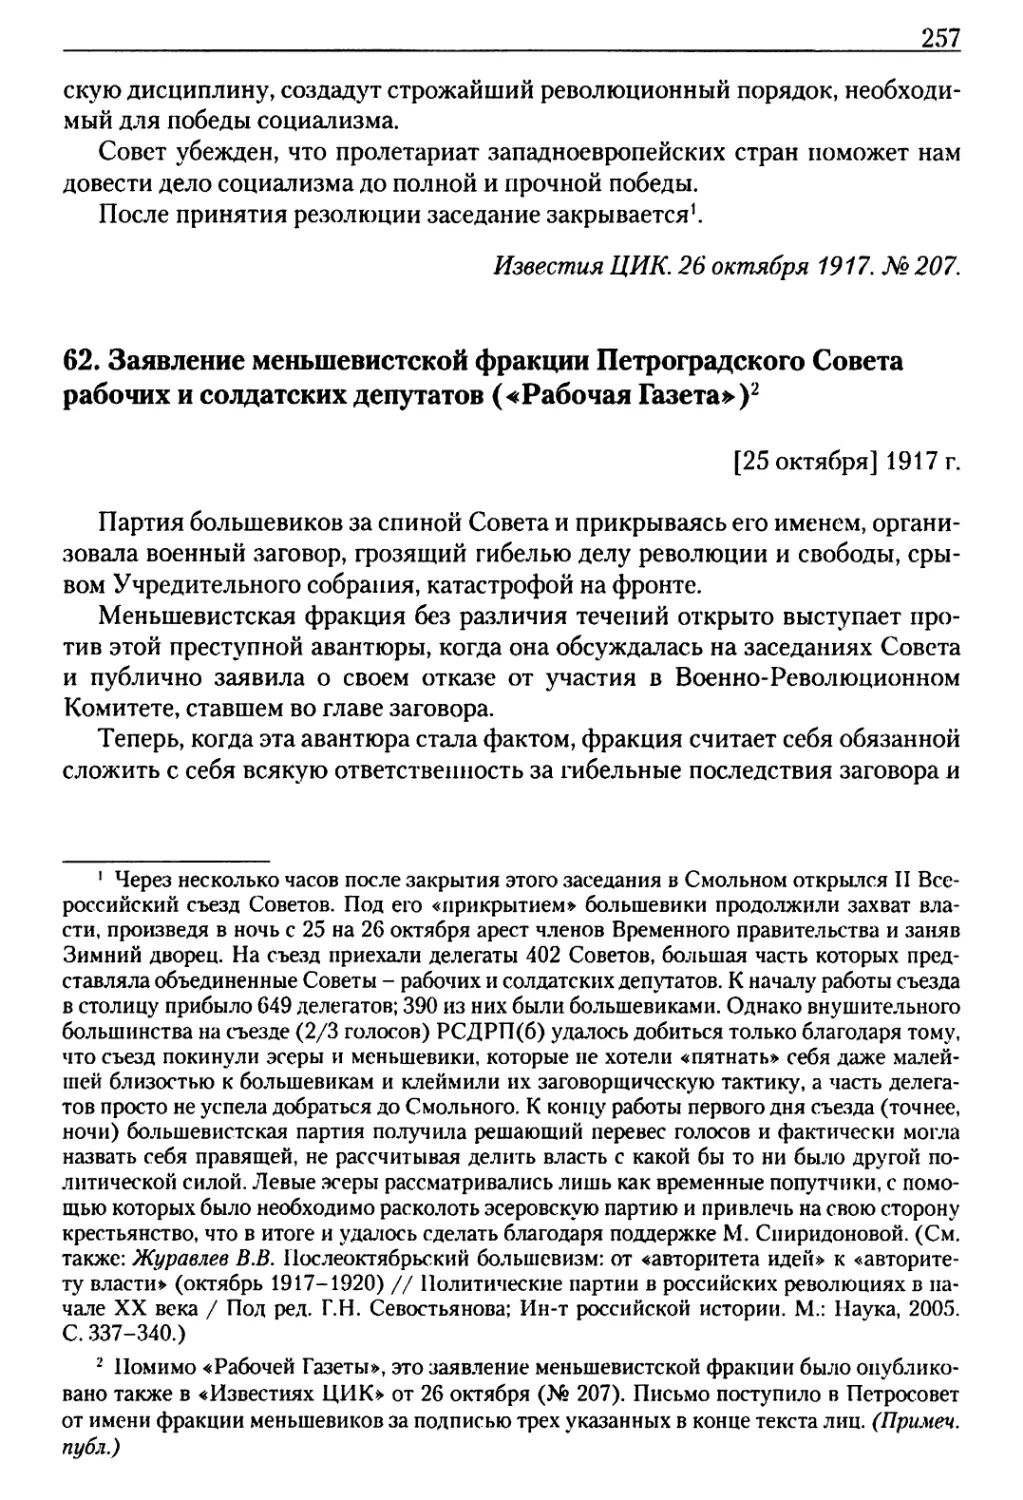 62. Заявление меньшевистской фракции Петроградского Совета рабочих и солдатских депутатов